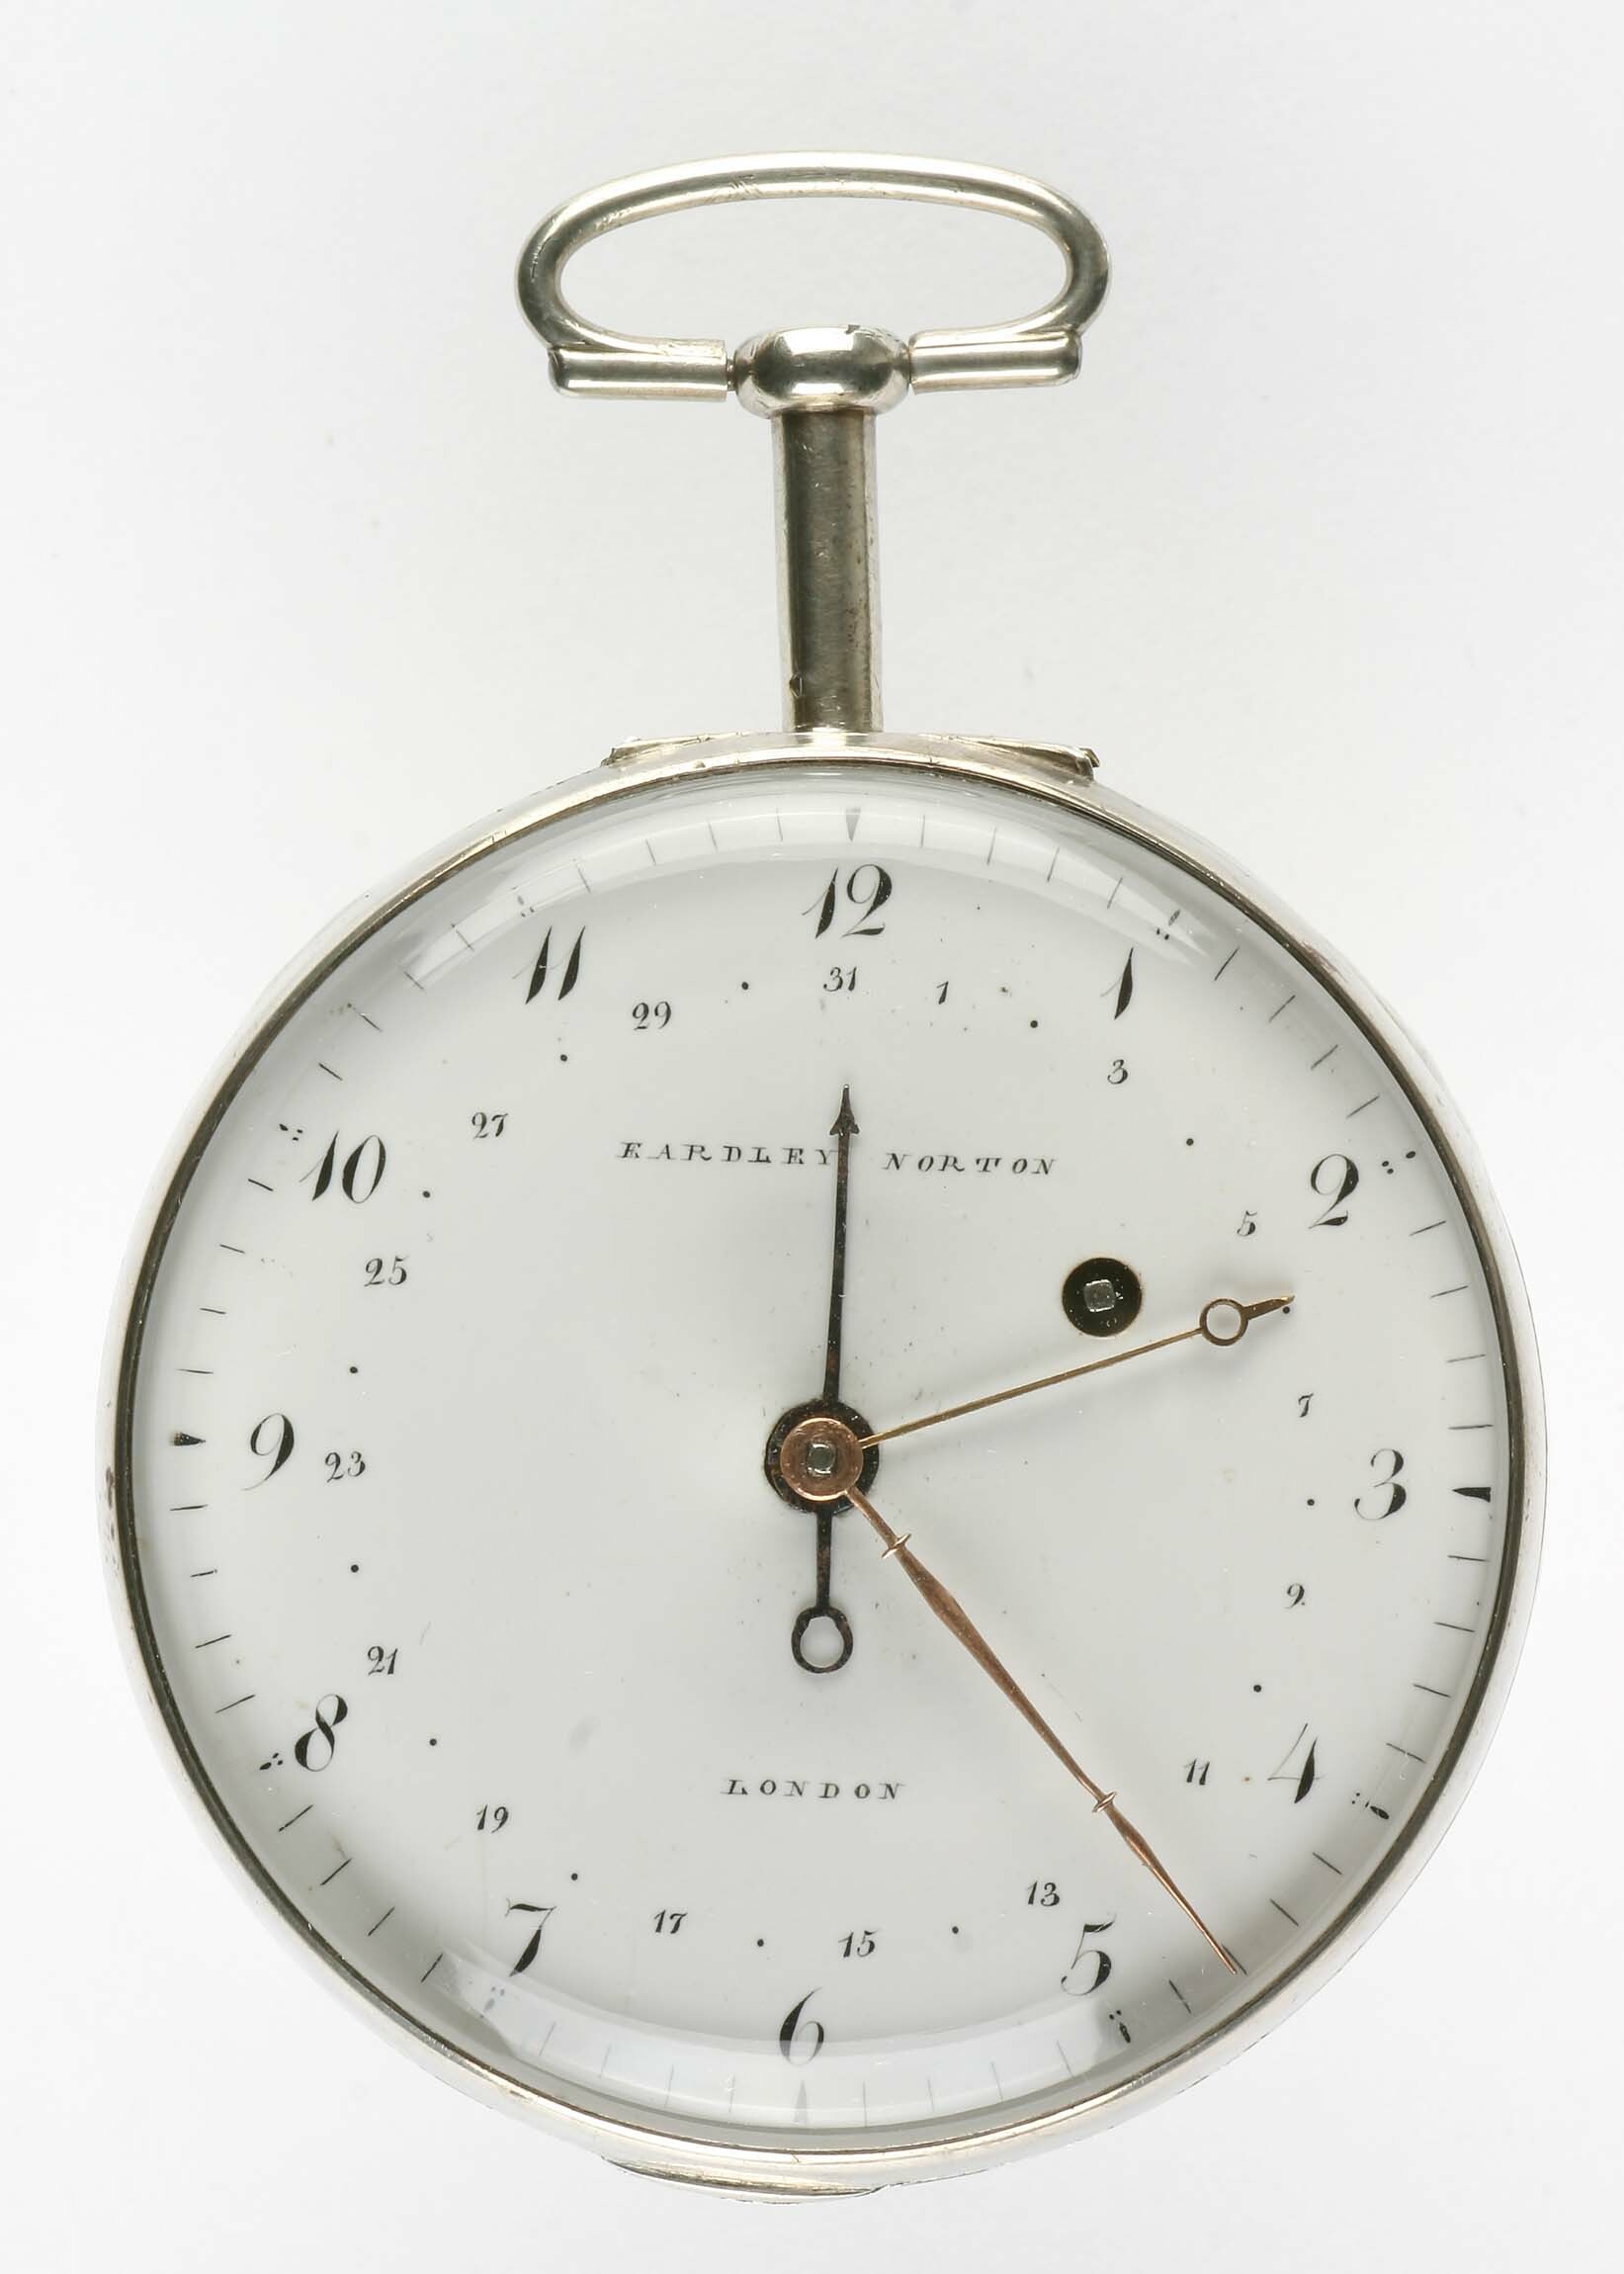 Taschenuhr, Eardley Norton, London, um 1800 (Deutsches Uhrenmuseum CC BY-SA)